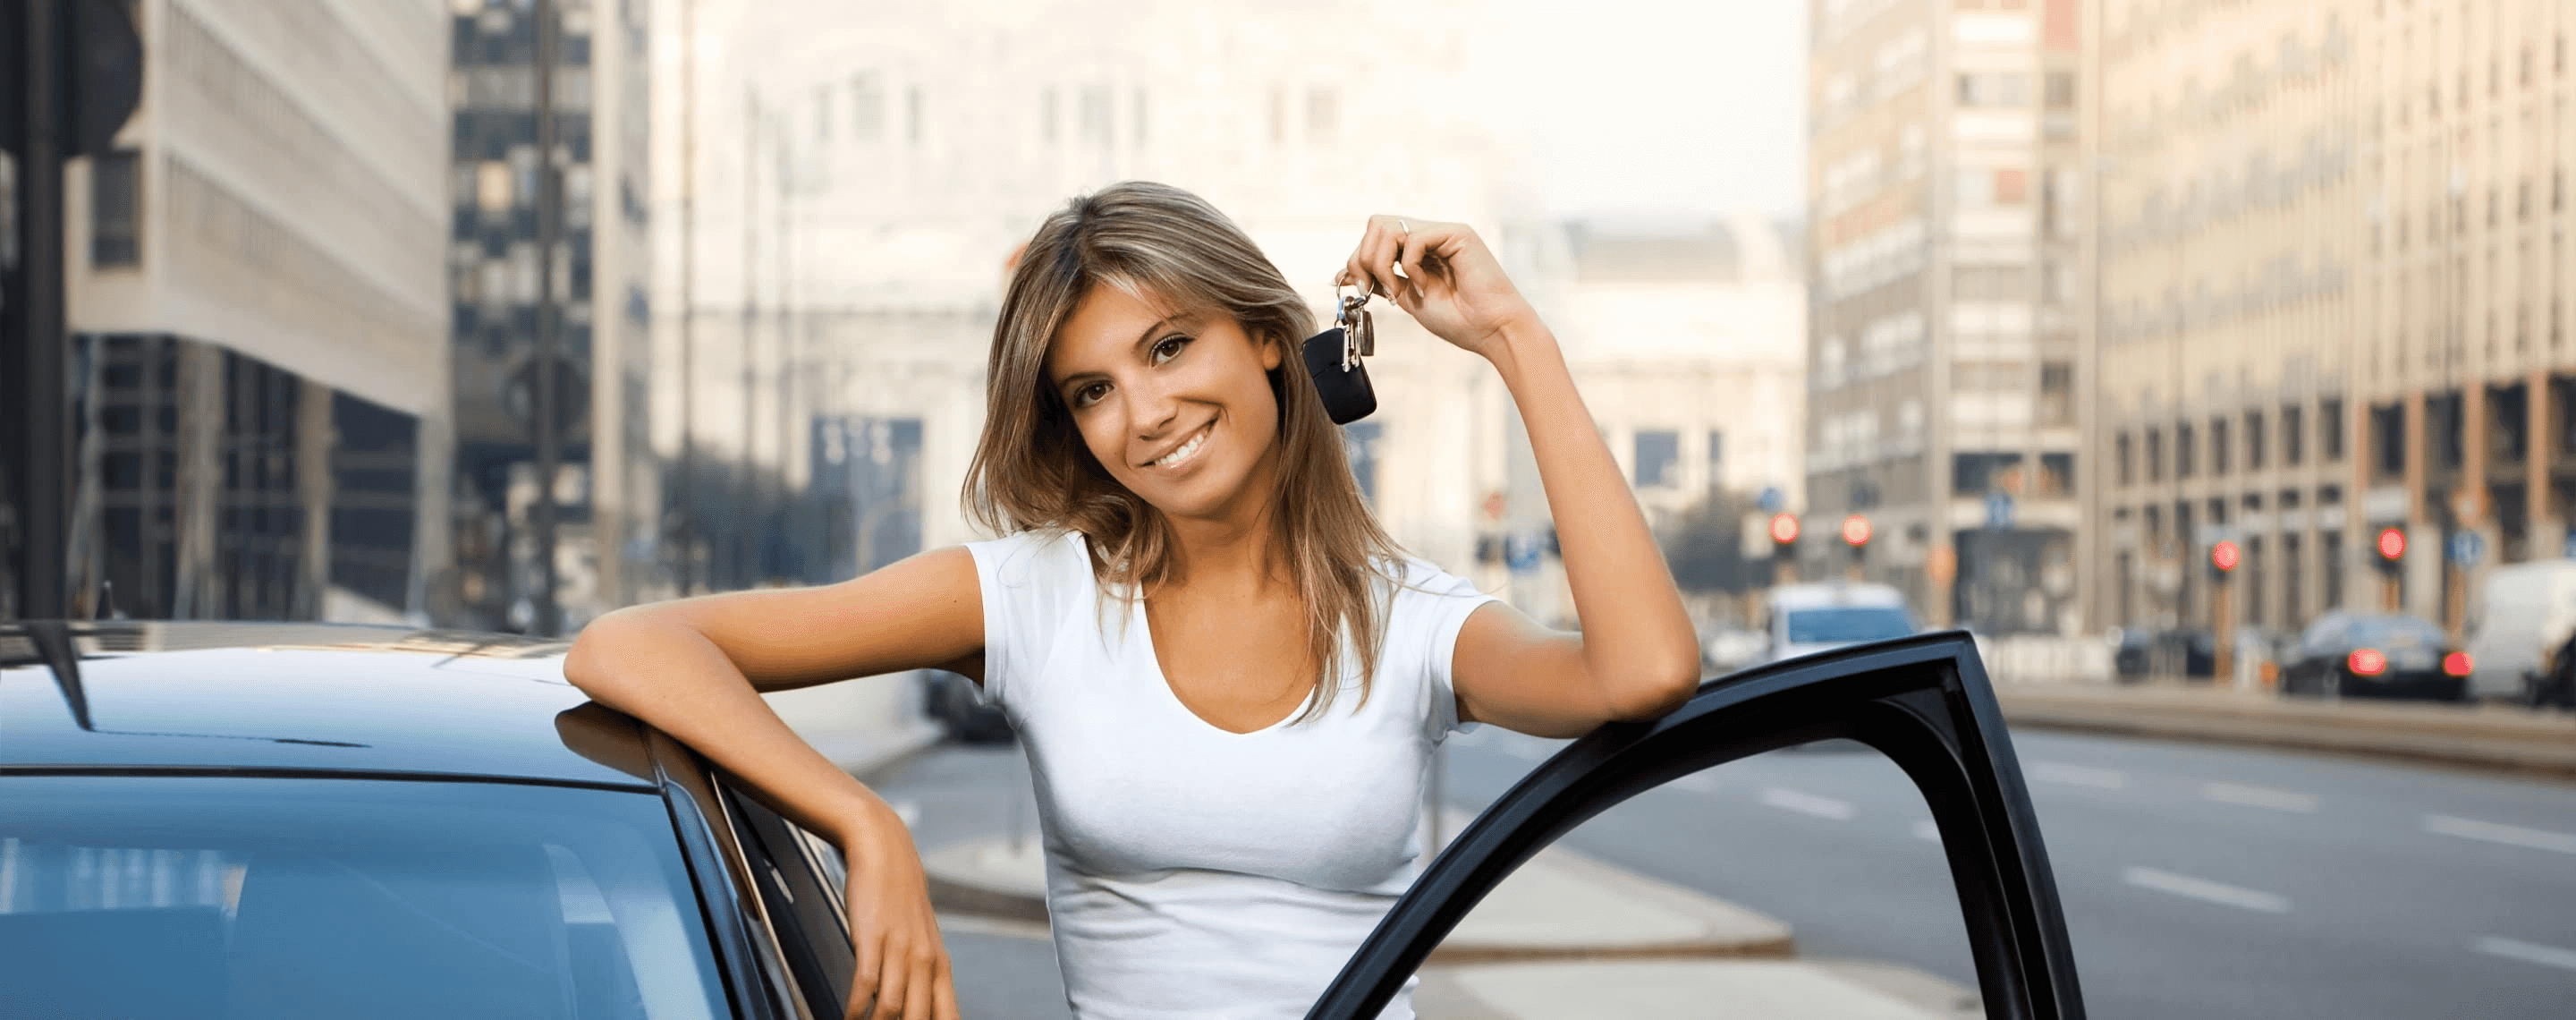 Frau mit Autoschlüssel steht lächelnd neben Auto